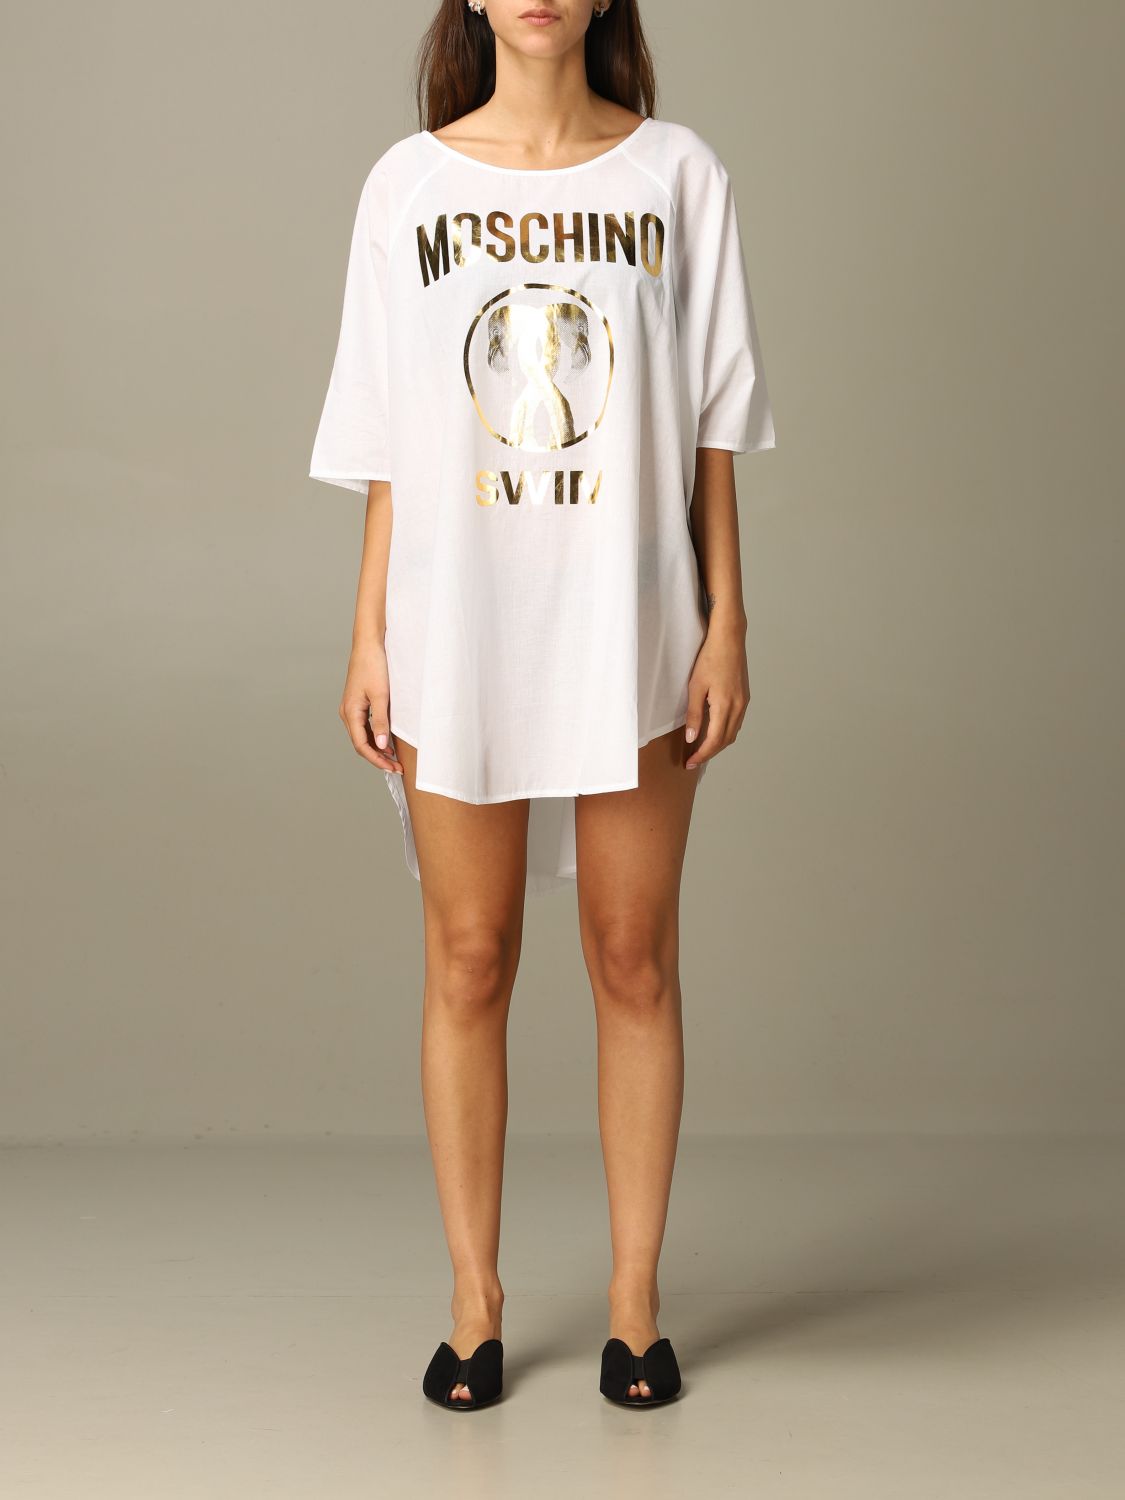 Moschino Underwear Outlet: Dress women | Dress Moschino Underwear Women ...